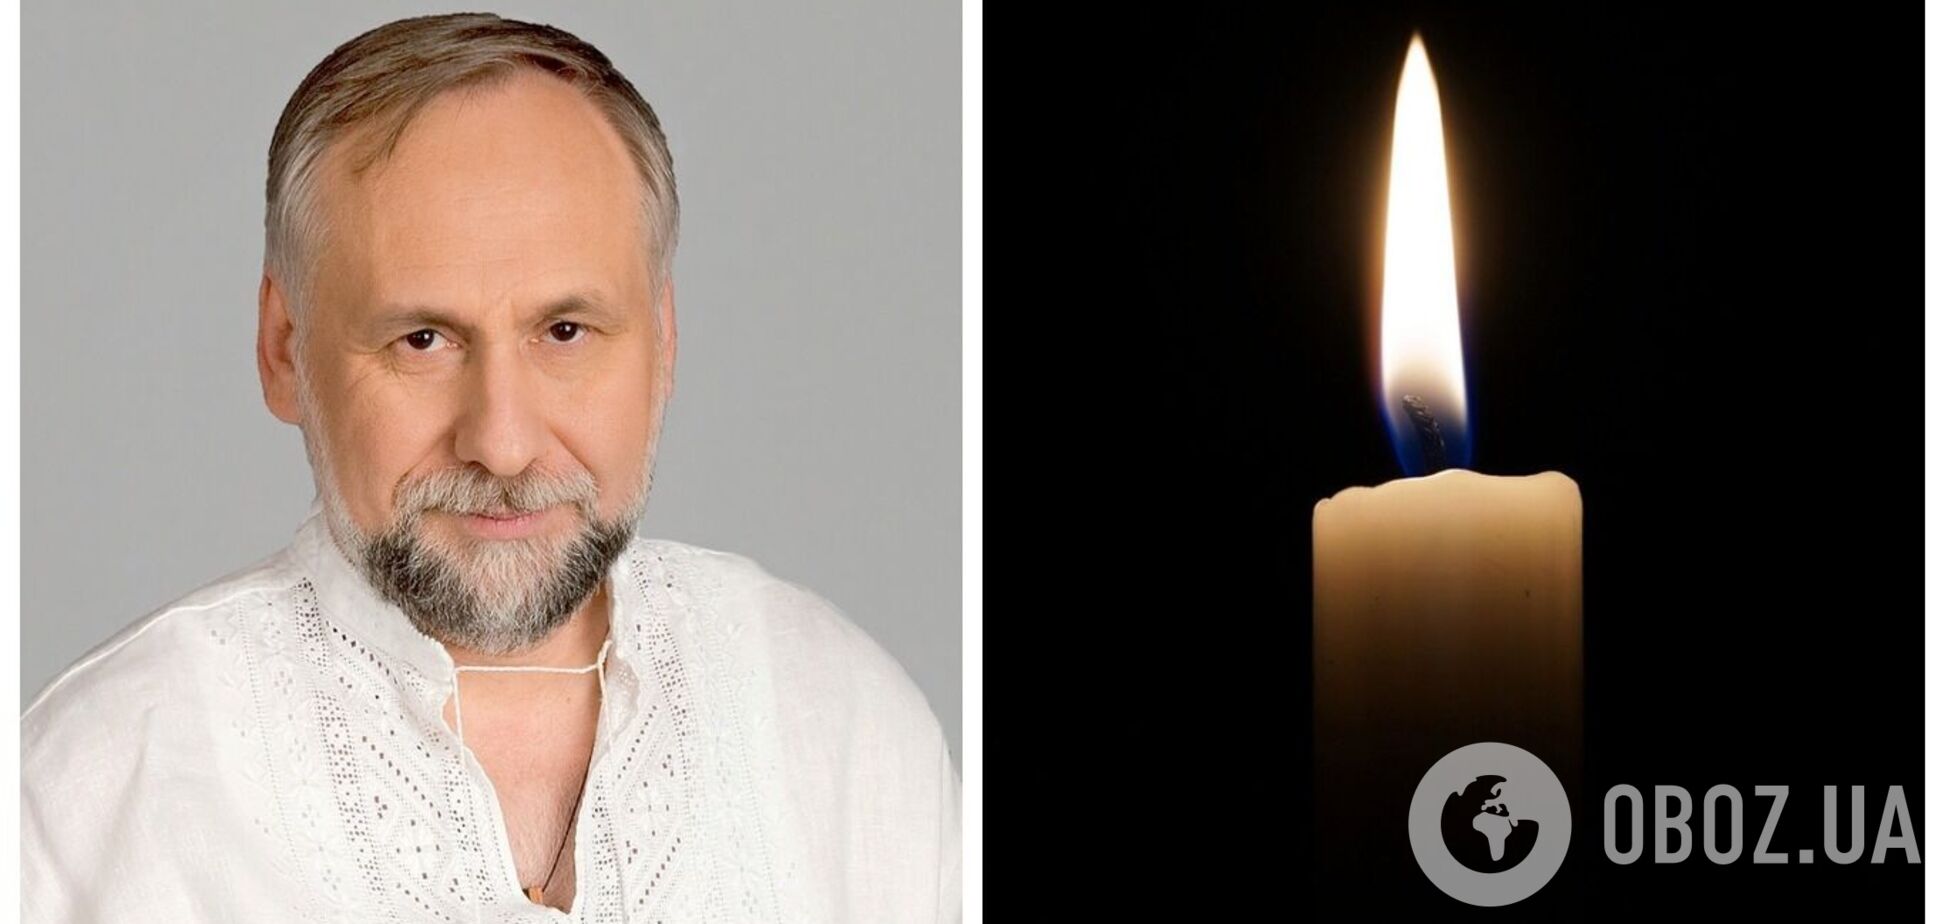 Умер известный украинский политик Юрий Кармазин